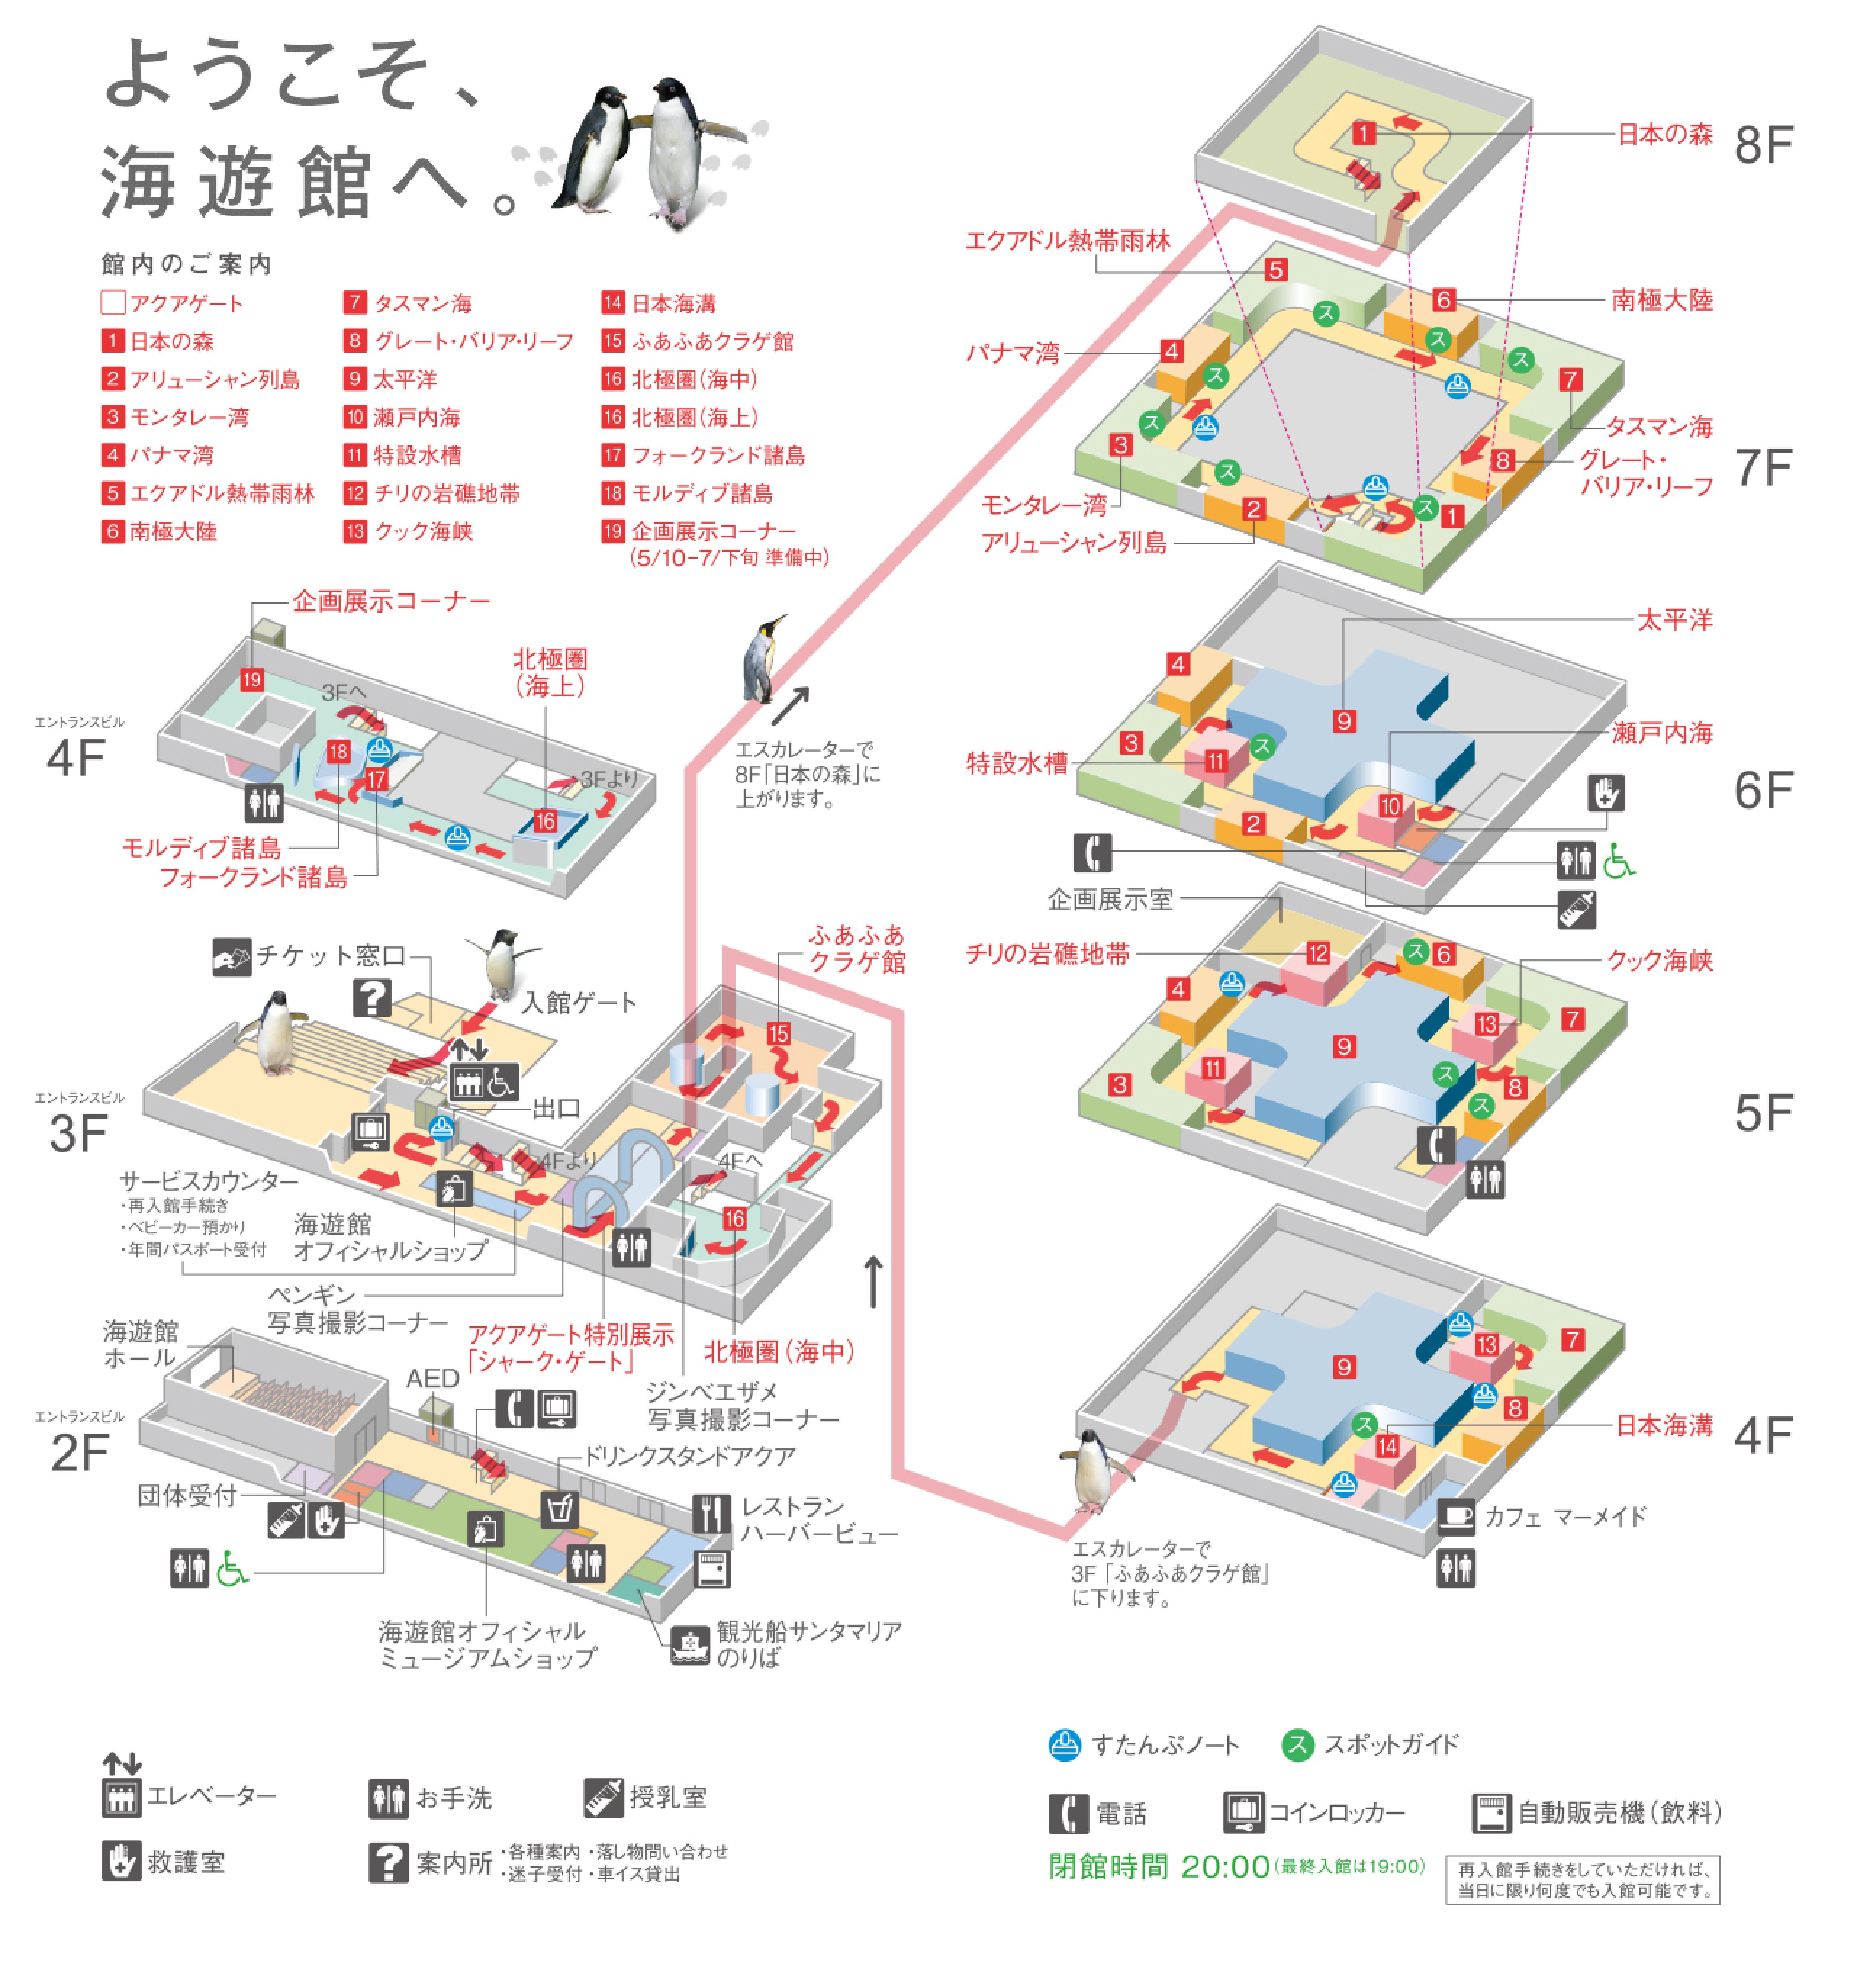 大阪海遊館地圖 海遊館マップ